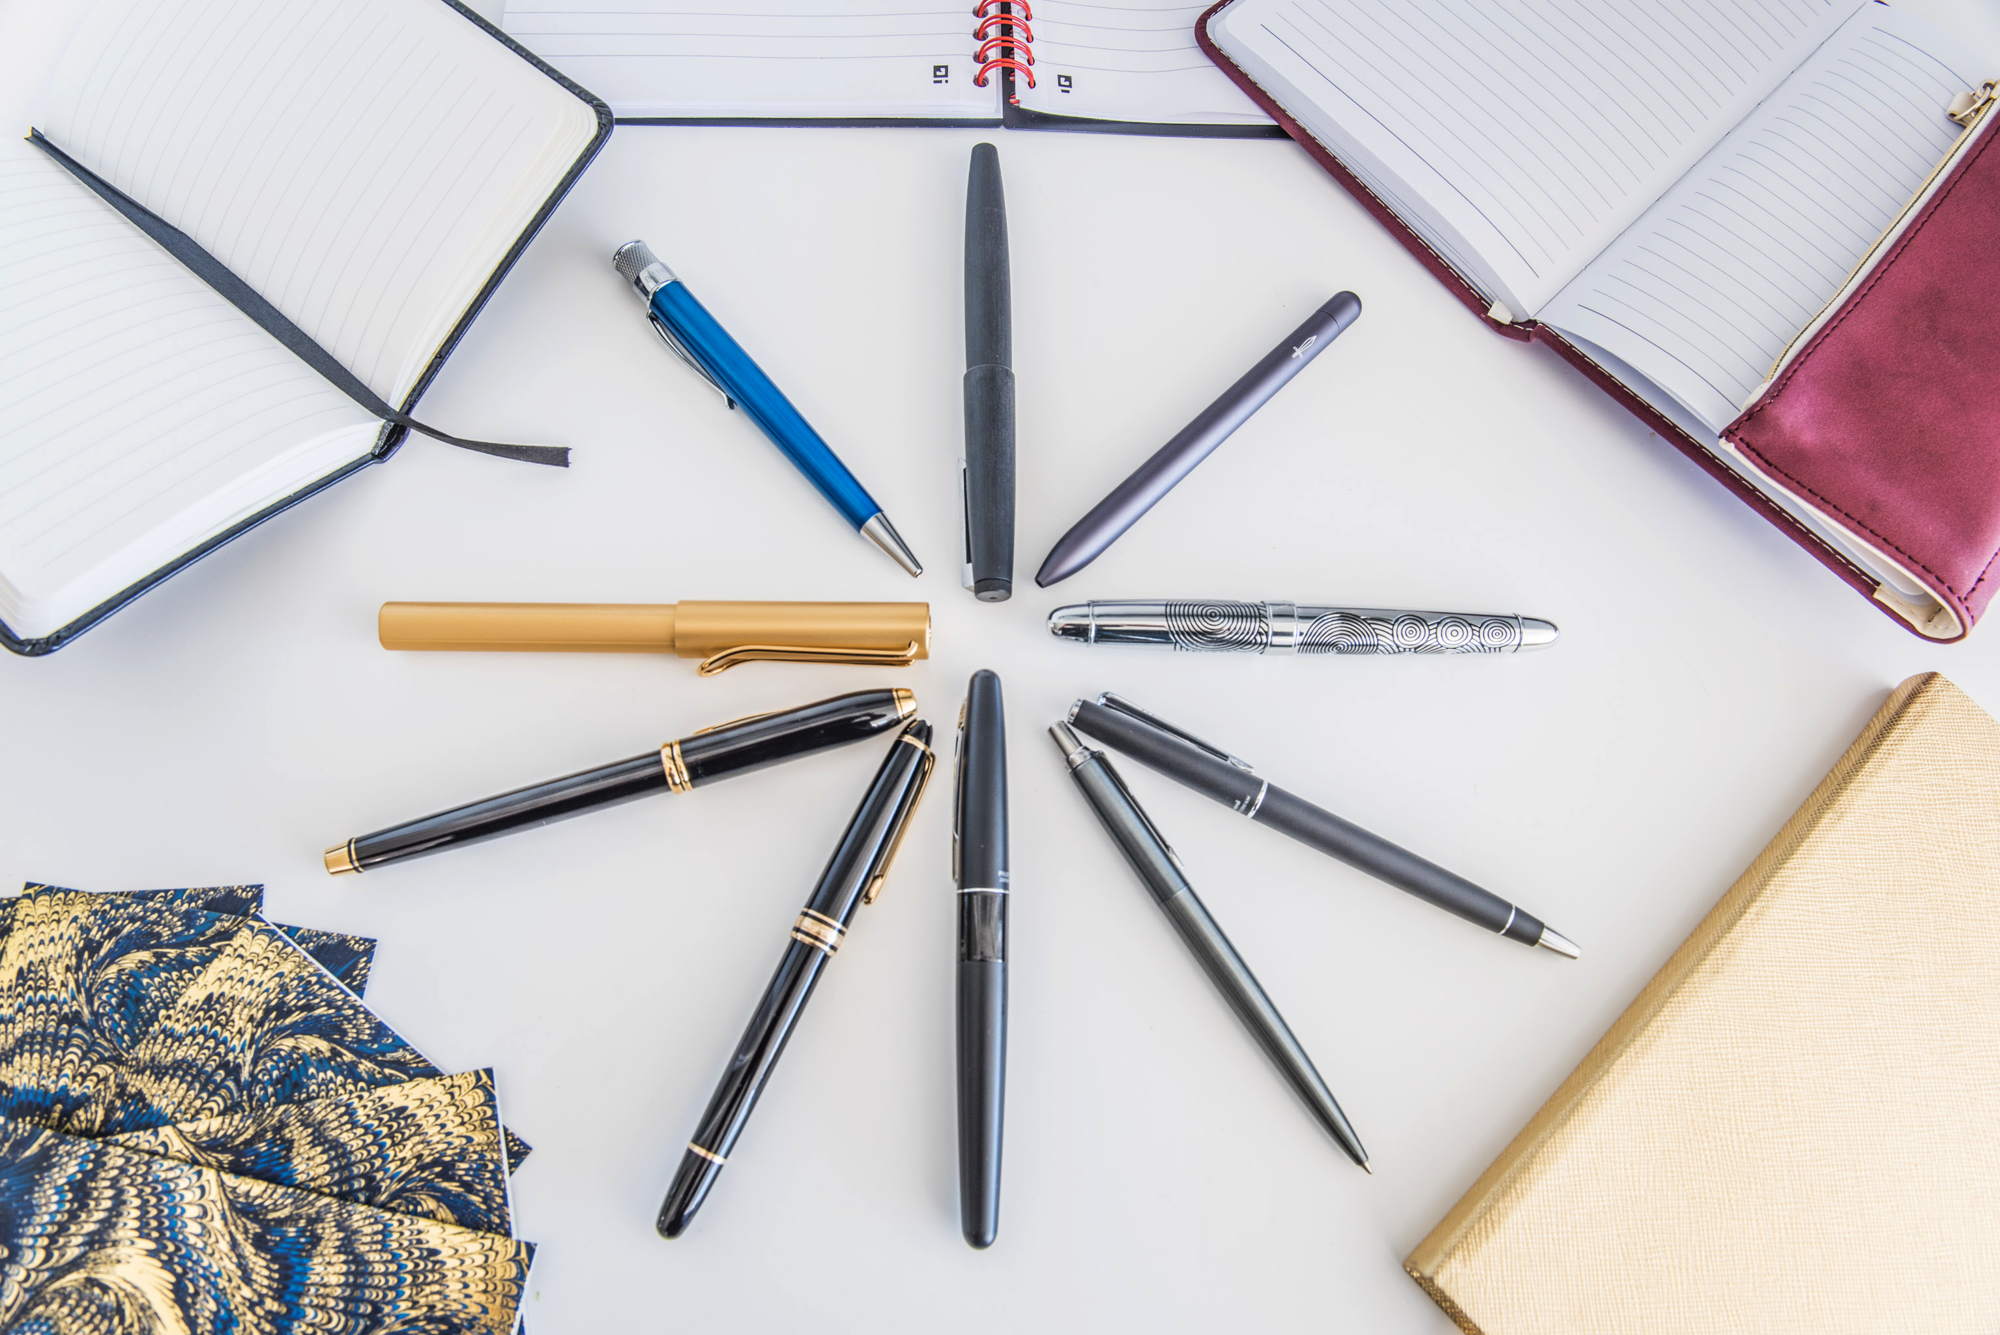 Details about   Duke Mentor Rollerball Pen Black & Snake Clip Writing Gift Pen Set 